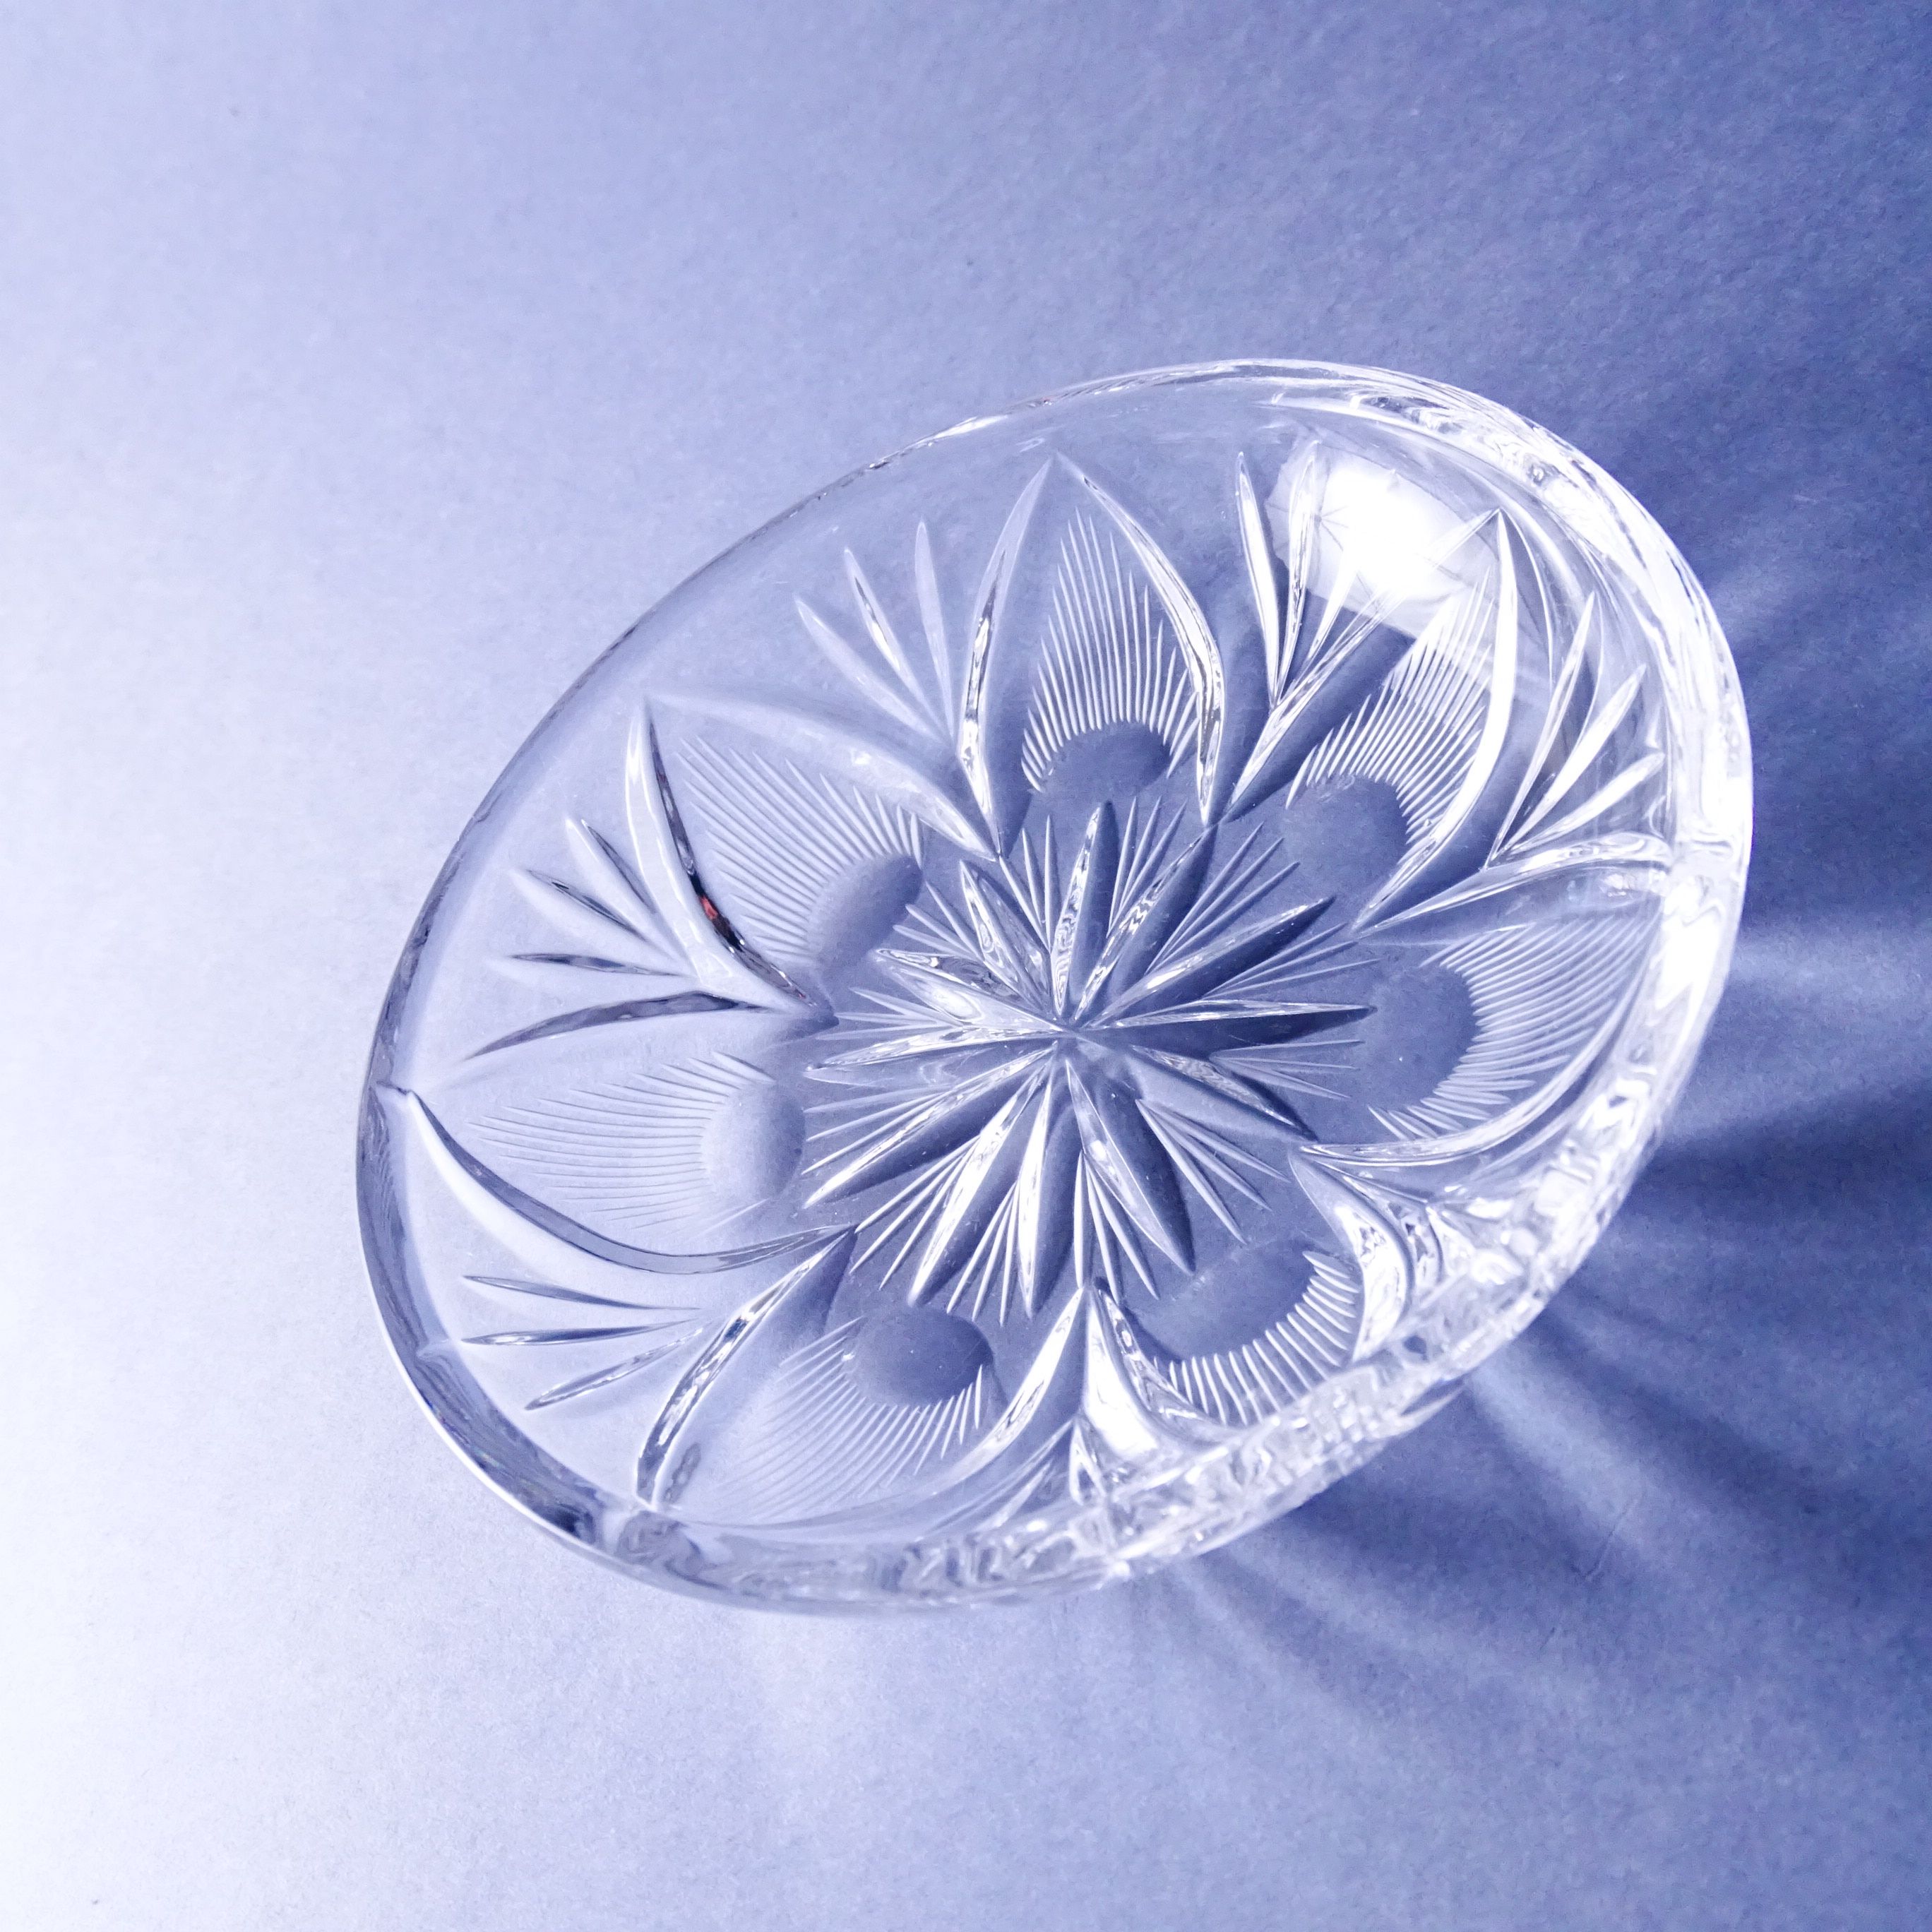 piękny kryształowy szlifowany talerzyk spodek miseczka